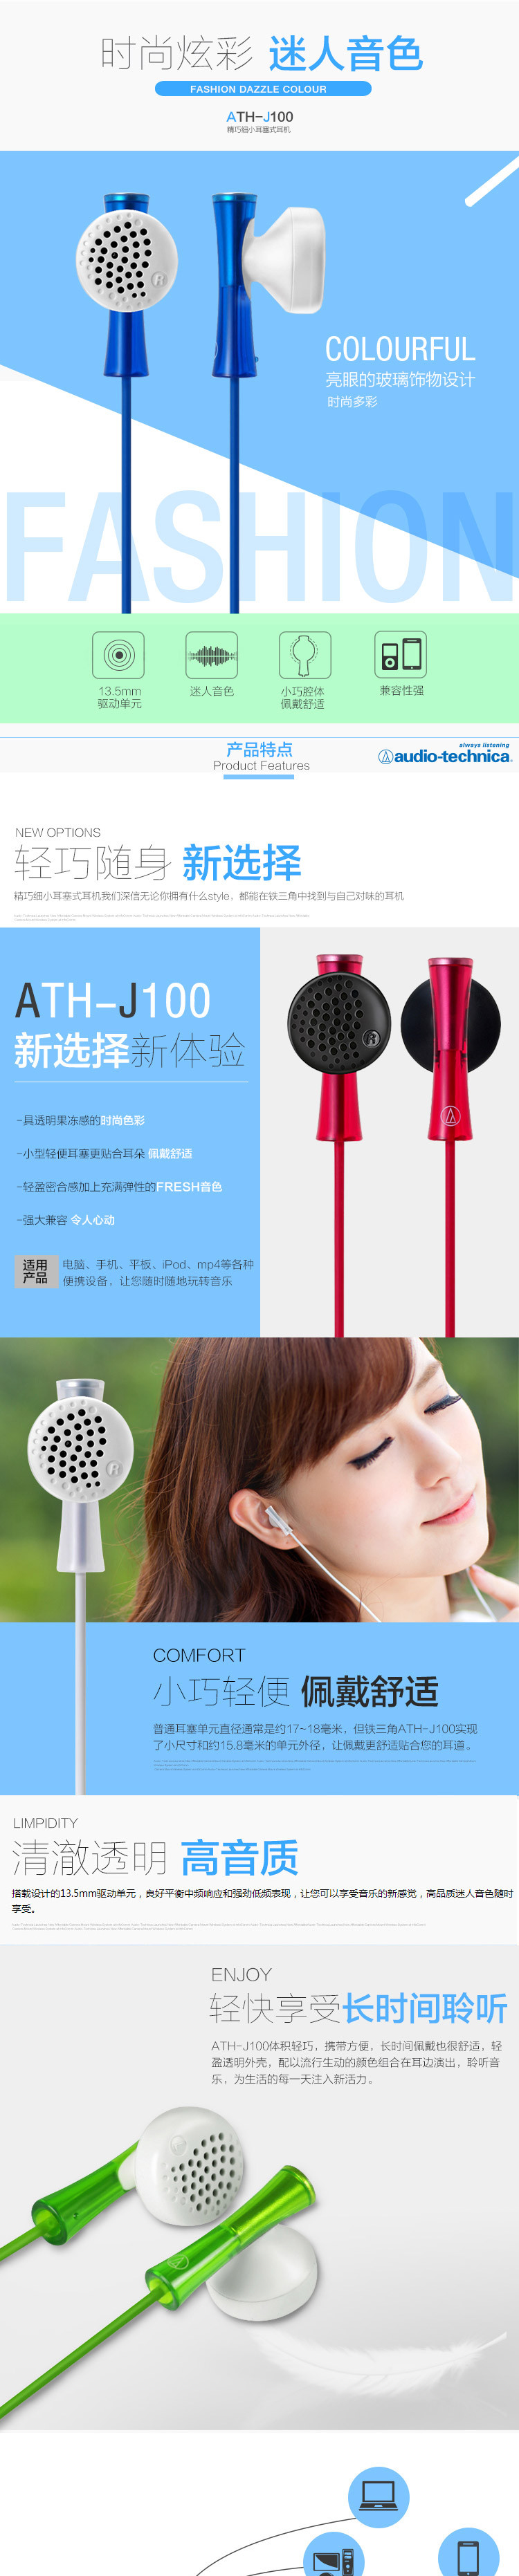 铁三角（Audio-technica） ATH-J100 PK 精巧细小耳塞式耳机 时尚多彩 粉色